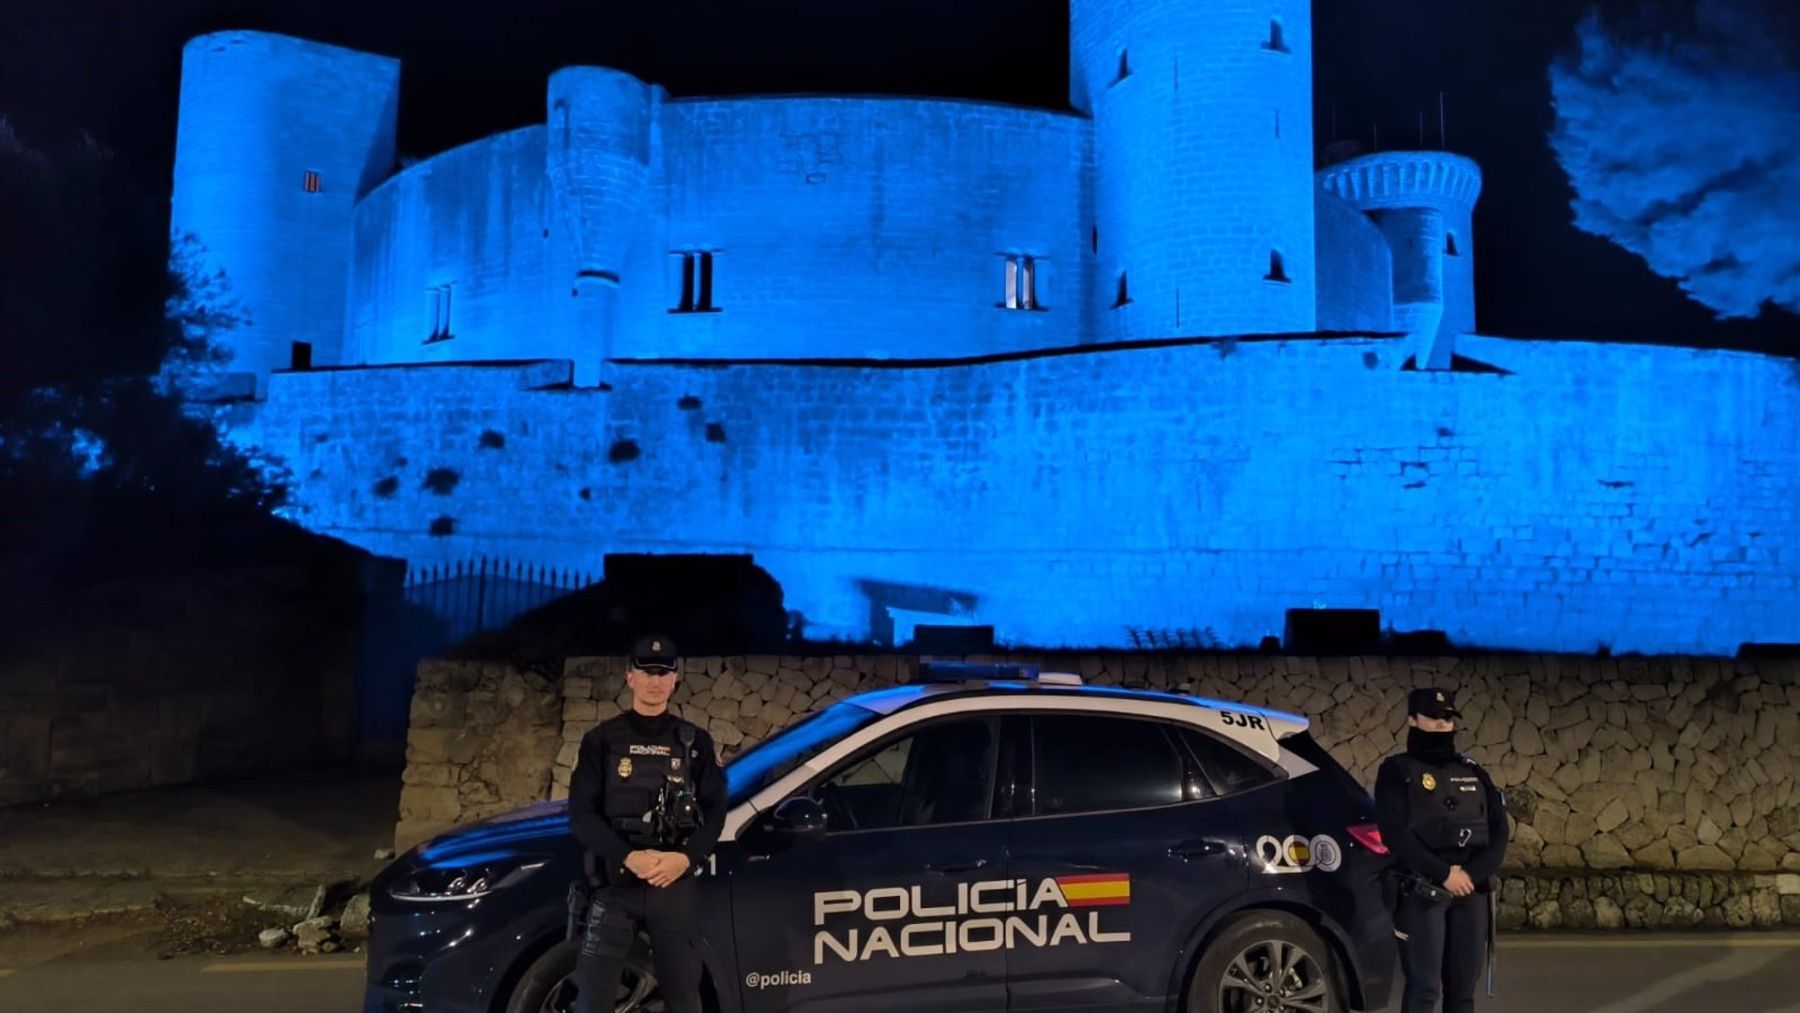 Agentes de la Policía Nacional, junto a un vehículo policial, y, tras ellos, el Castillo de Bellver, teñido de azul por el Bicentenario del Cuerpo.